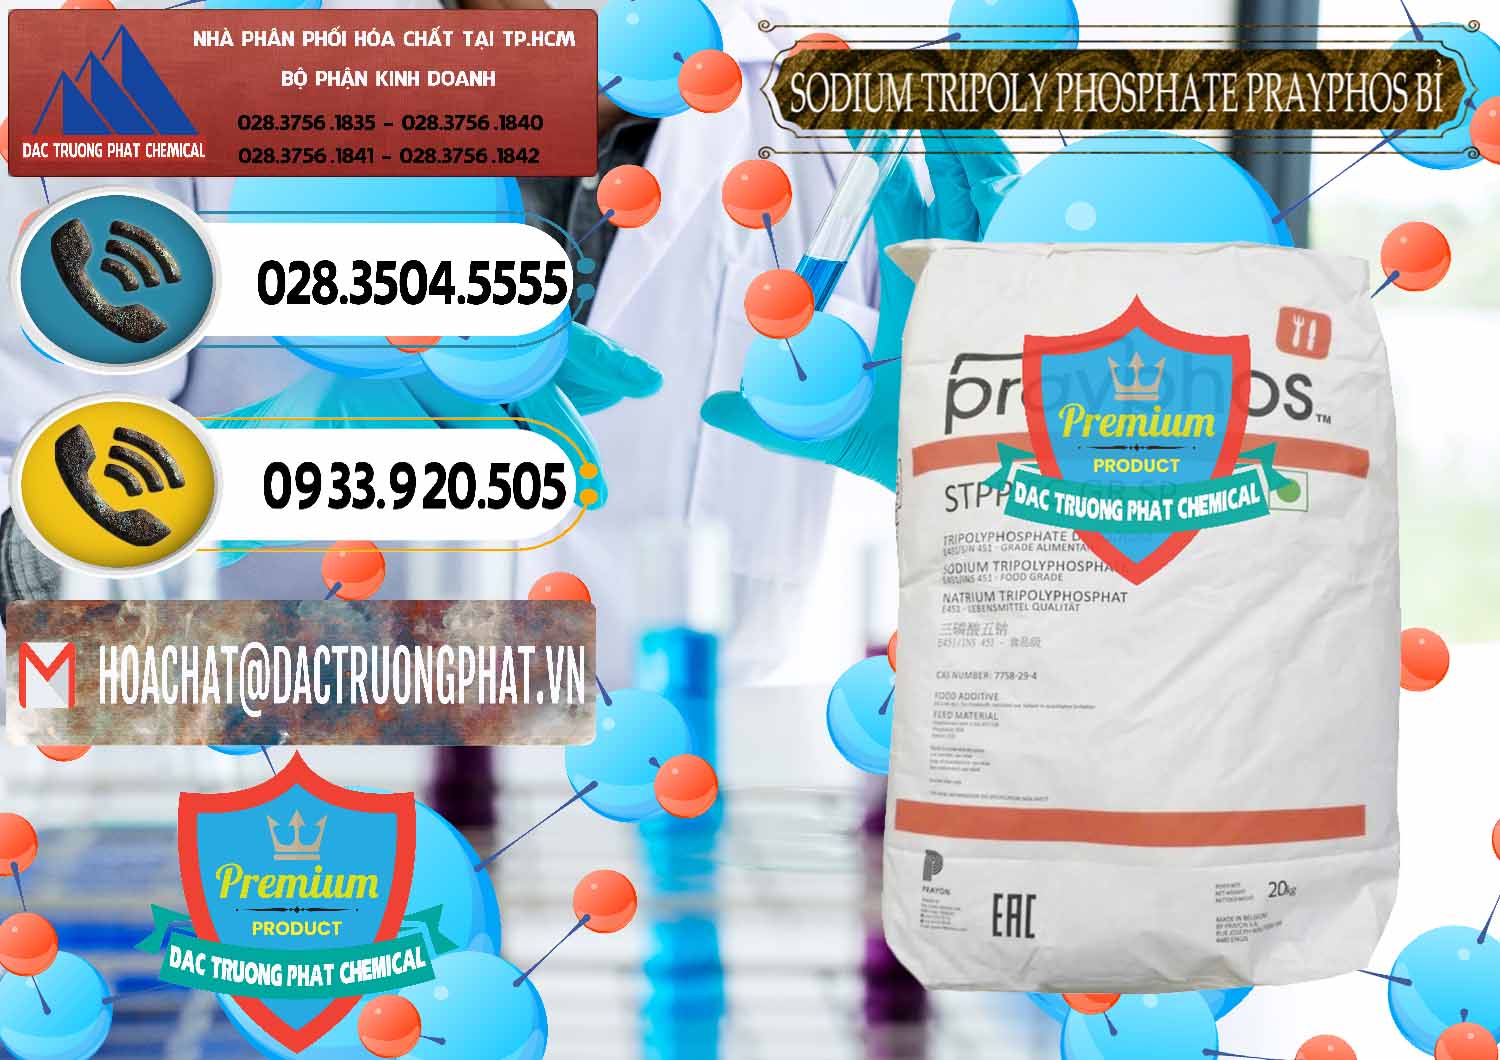 Công ty bán ( cung cấp ) Sodium Tripoly Phosphate - STPP Prayphos Bỉ Belgium - 0444 - Cty nhập khẩu _ phân phối hóa chất tại TP.HCM - hoachatdetnhuom.vn